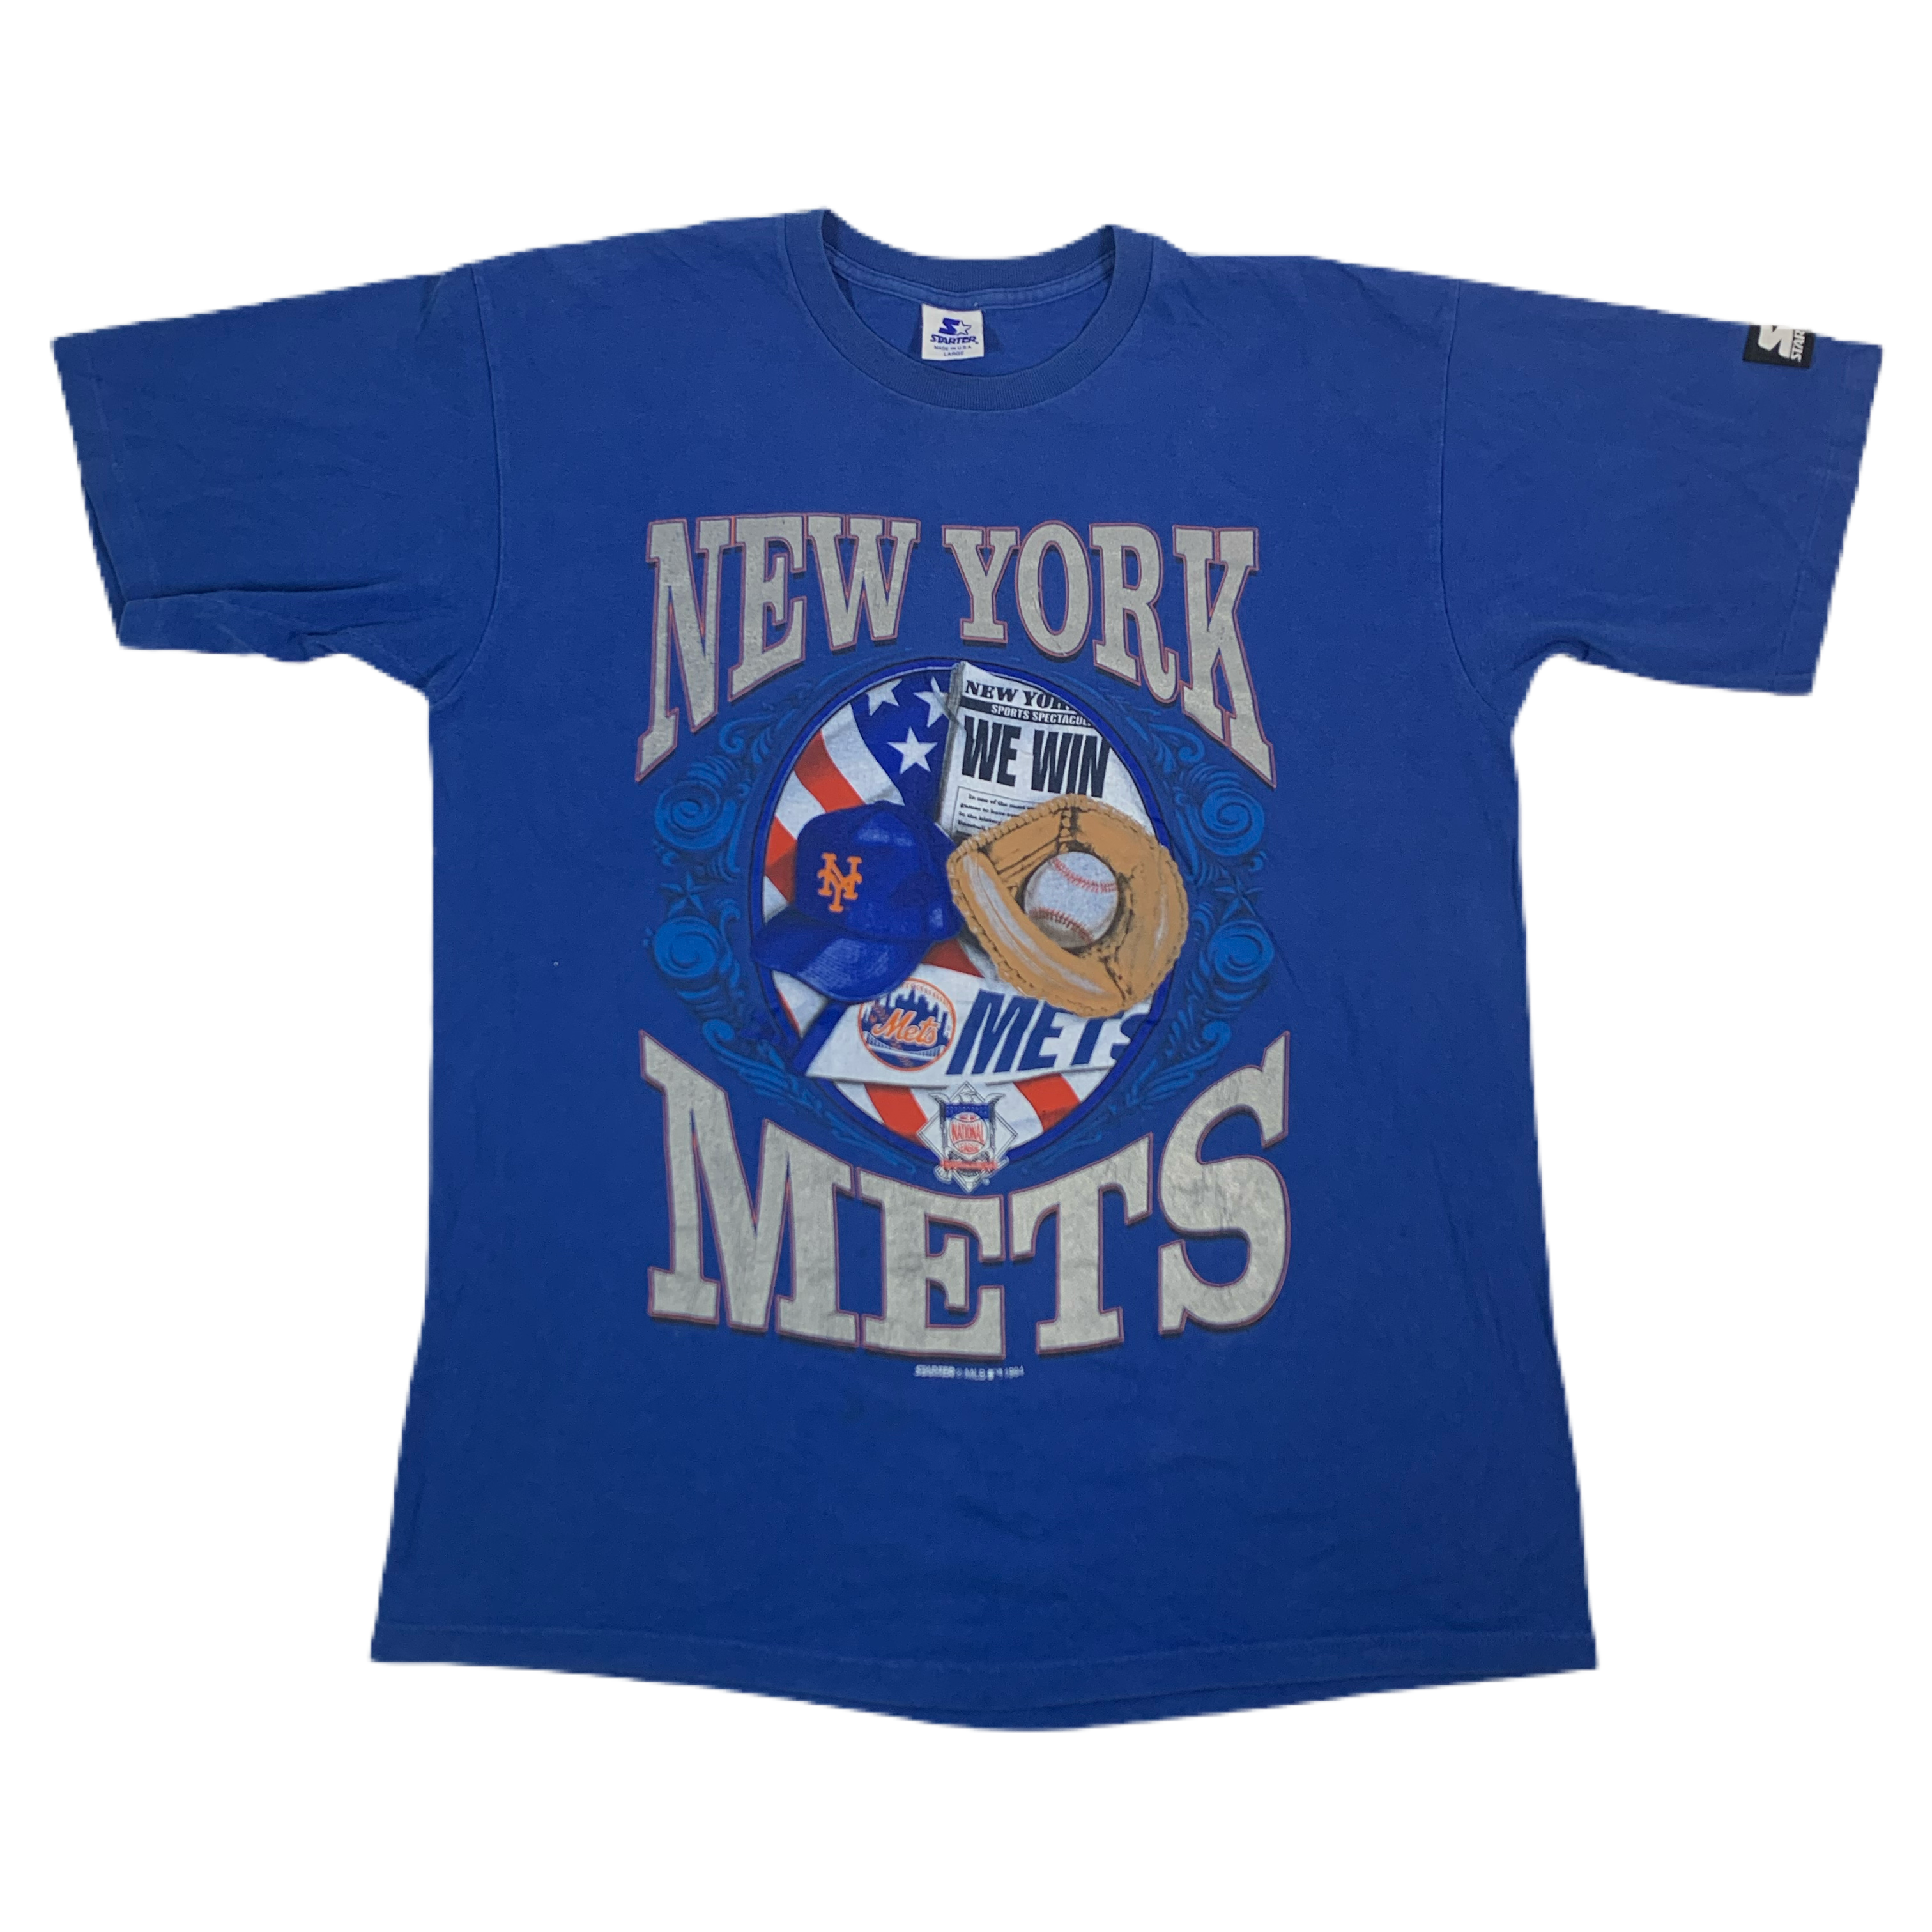 New York Mets Gear, New York Mets Apparel, Mets Merchandise